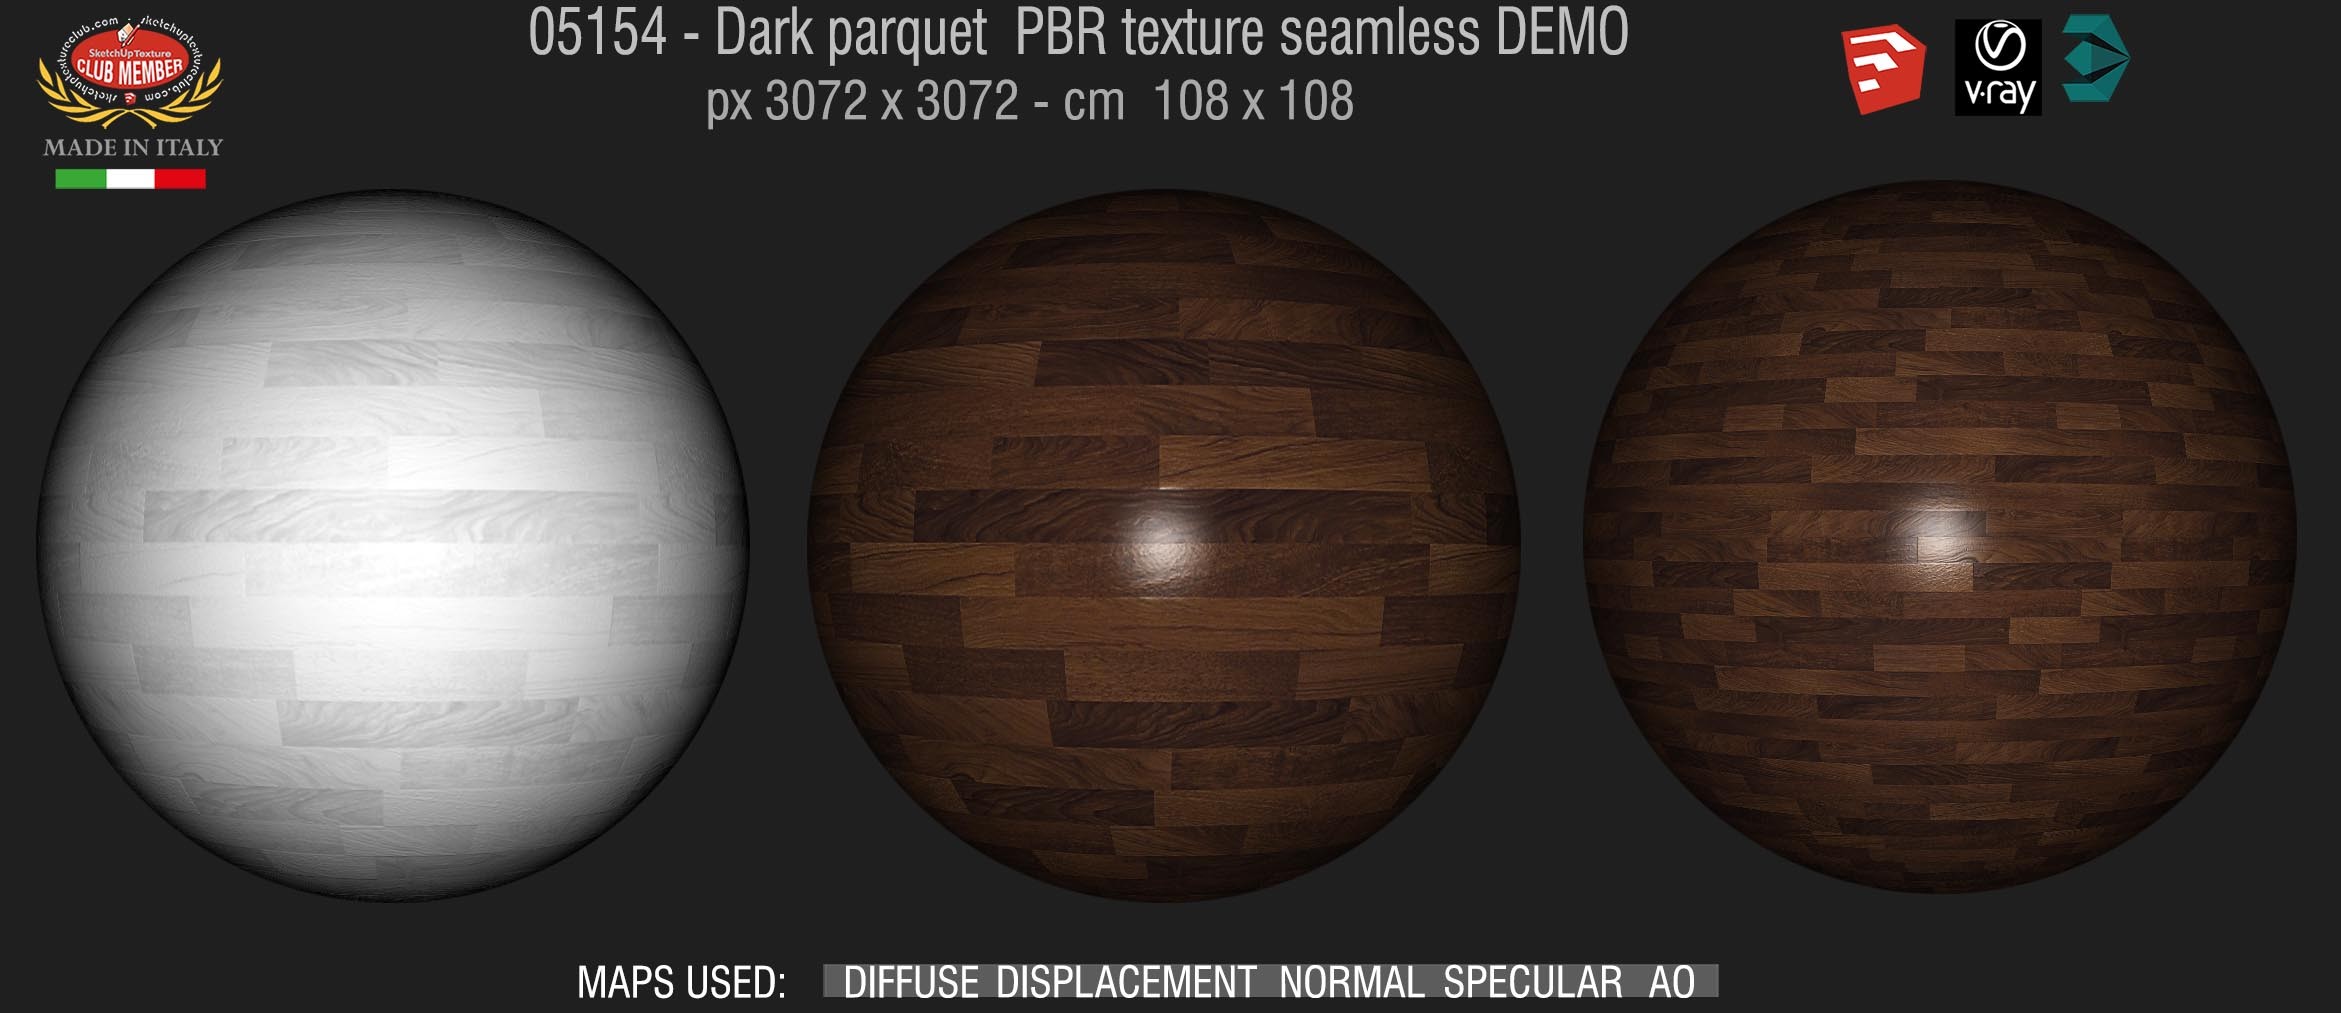 05154 dark parquet PBR texture seamless DEMO